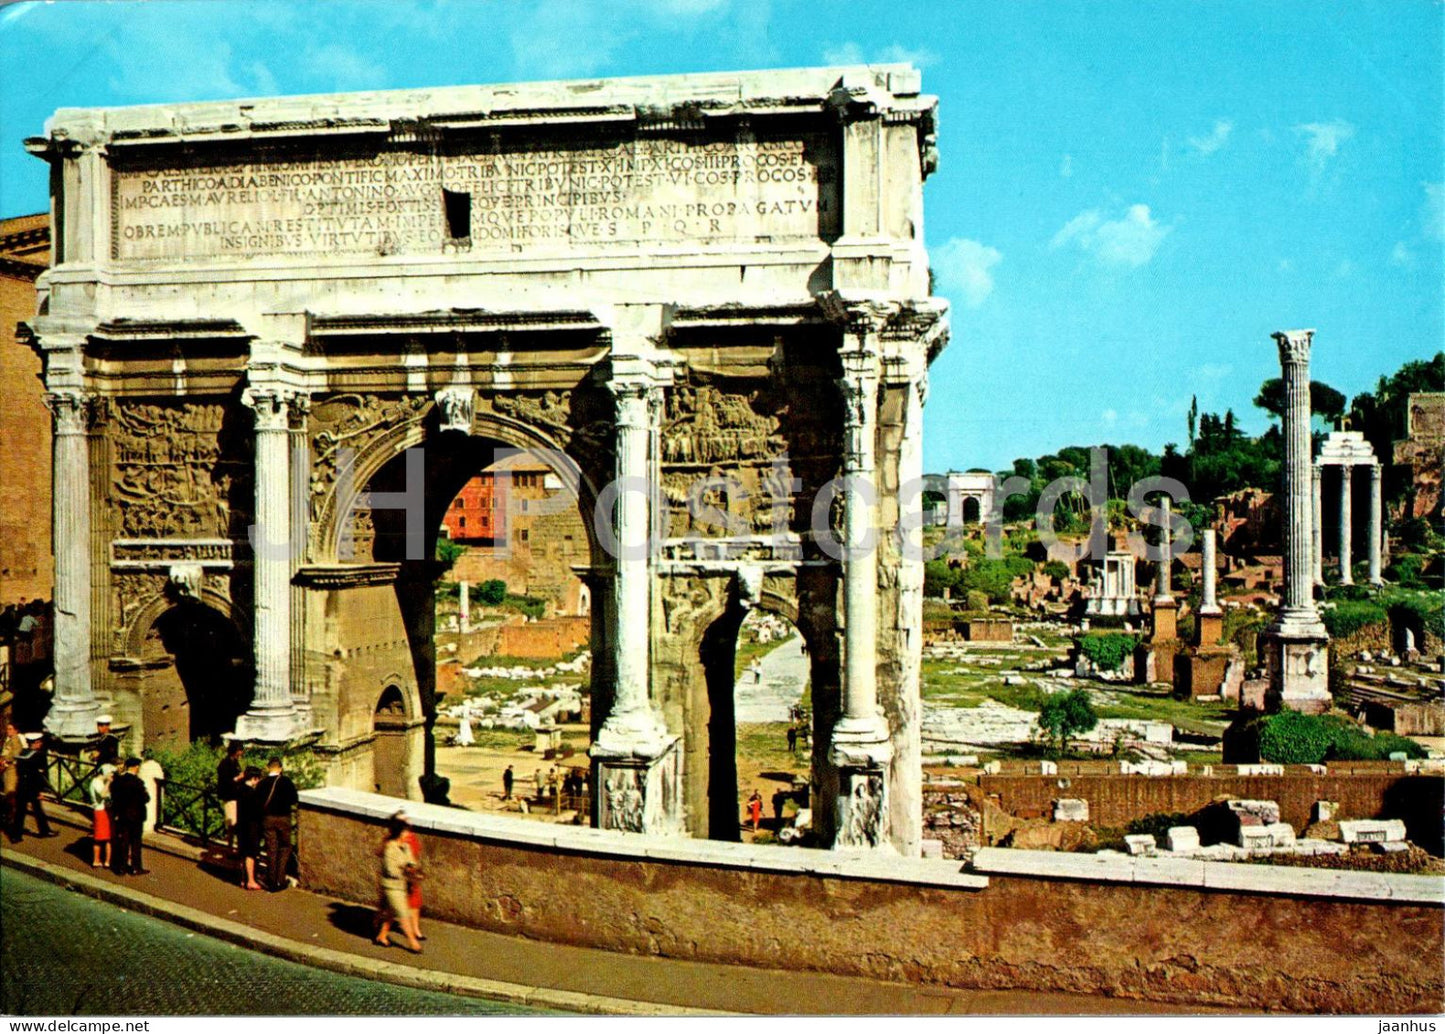 Roma - Rome - Arco di Settimo Severo - Septimius Severus Arch - ancient world - 1/63 - Italy - unused - JH Postcards